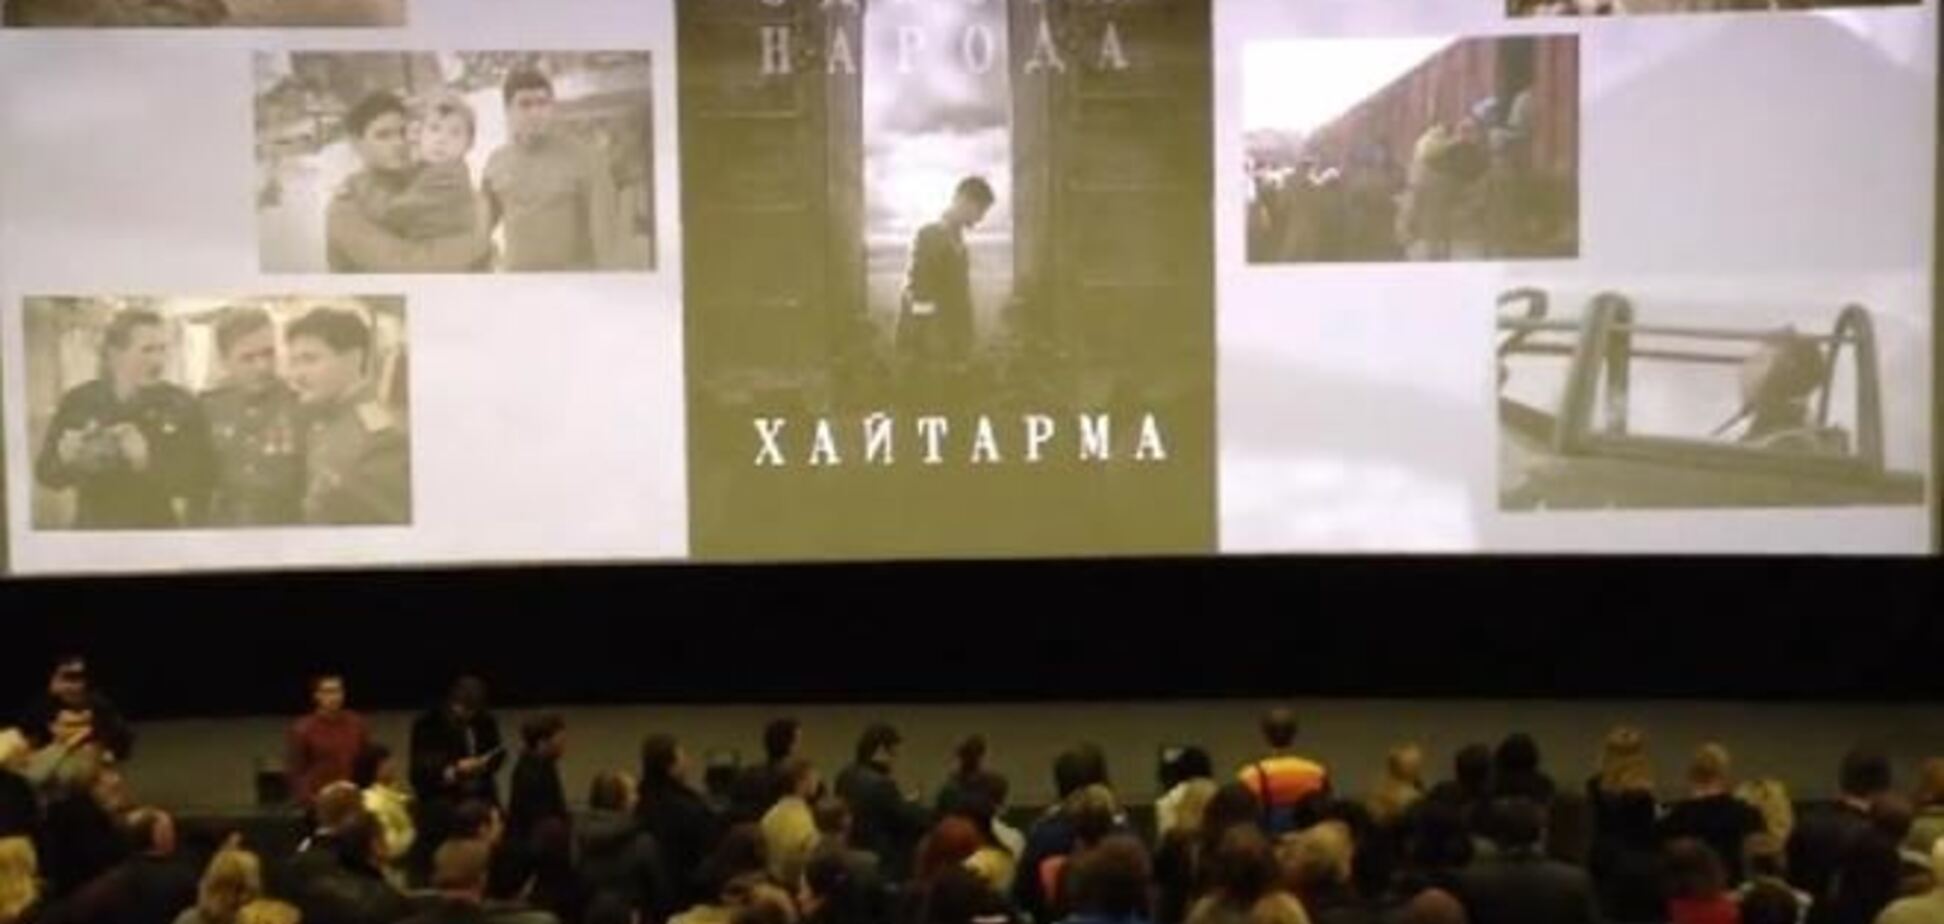 После демонстрации фильма о крымских татарах зрители со слезами на глазах пели гимн Украины